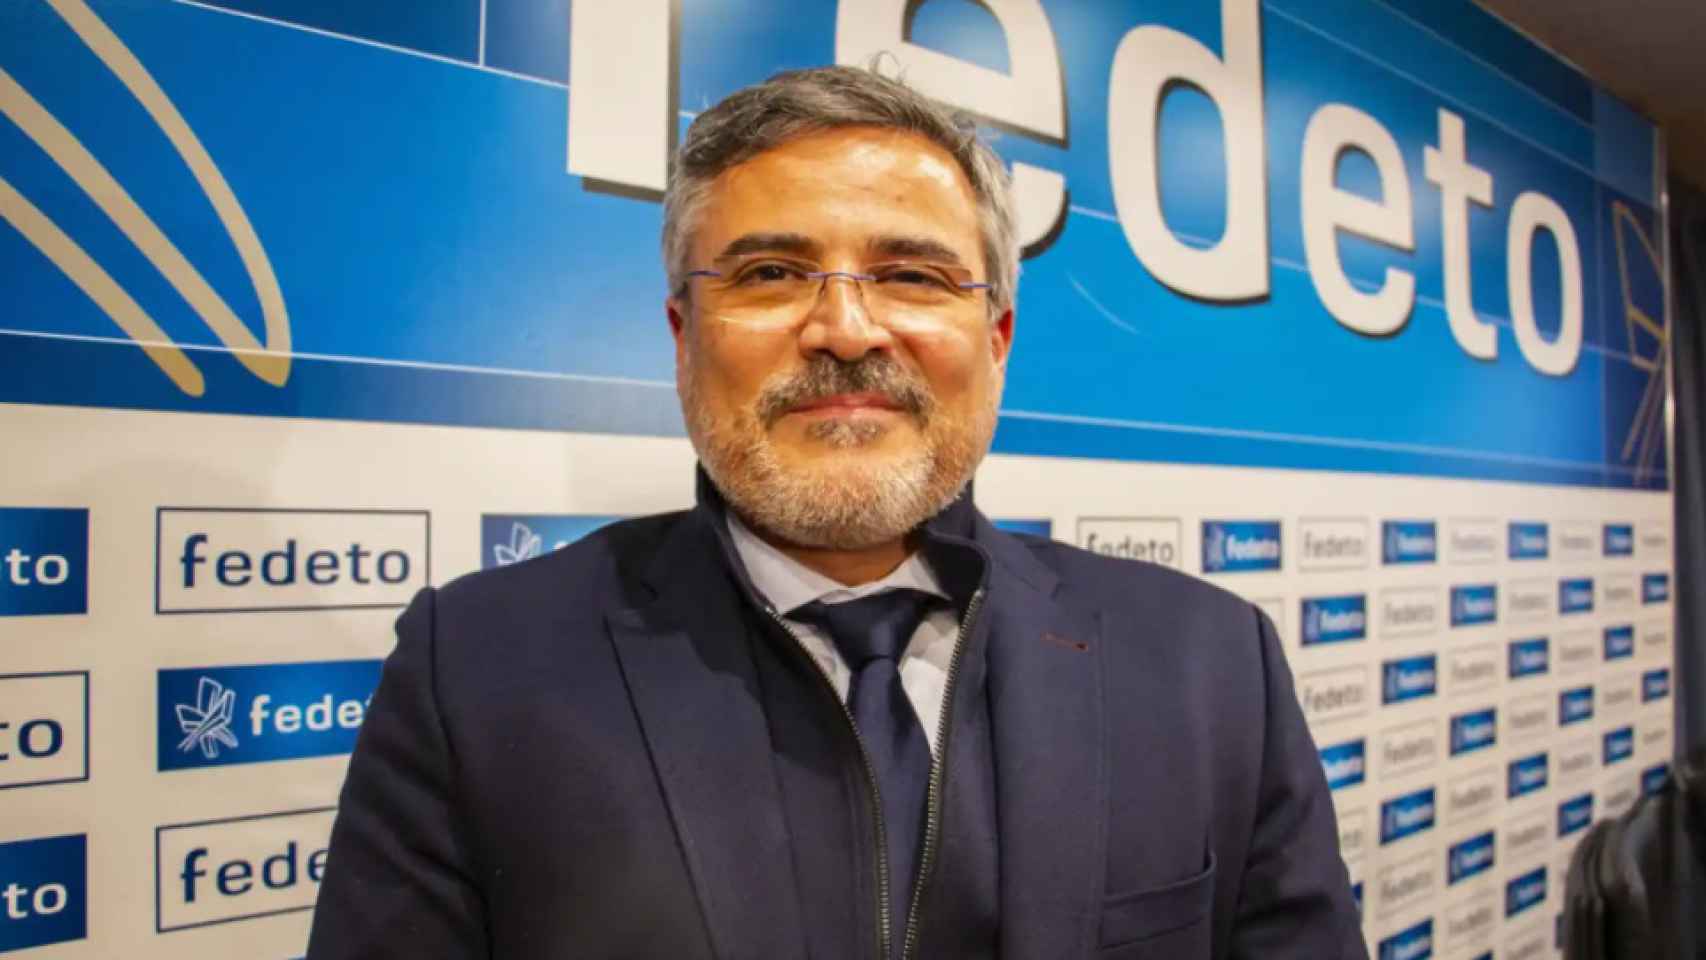 El empresario talaverano Javier de Antonio Arribas, nuevo presidente de la Federación Empresarial Toledana (Fedeto).